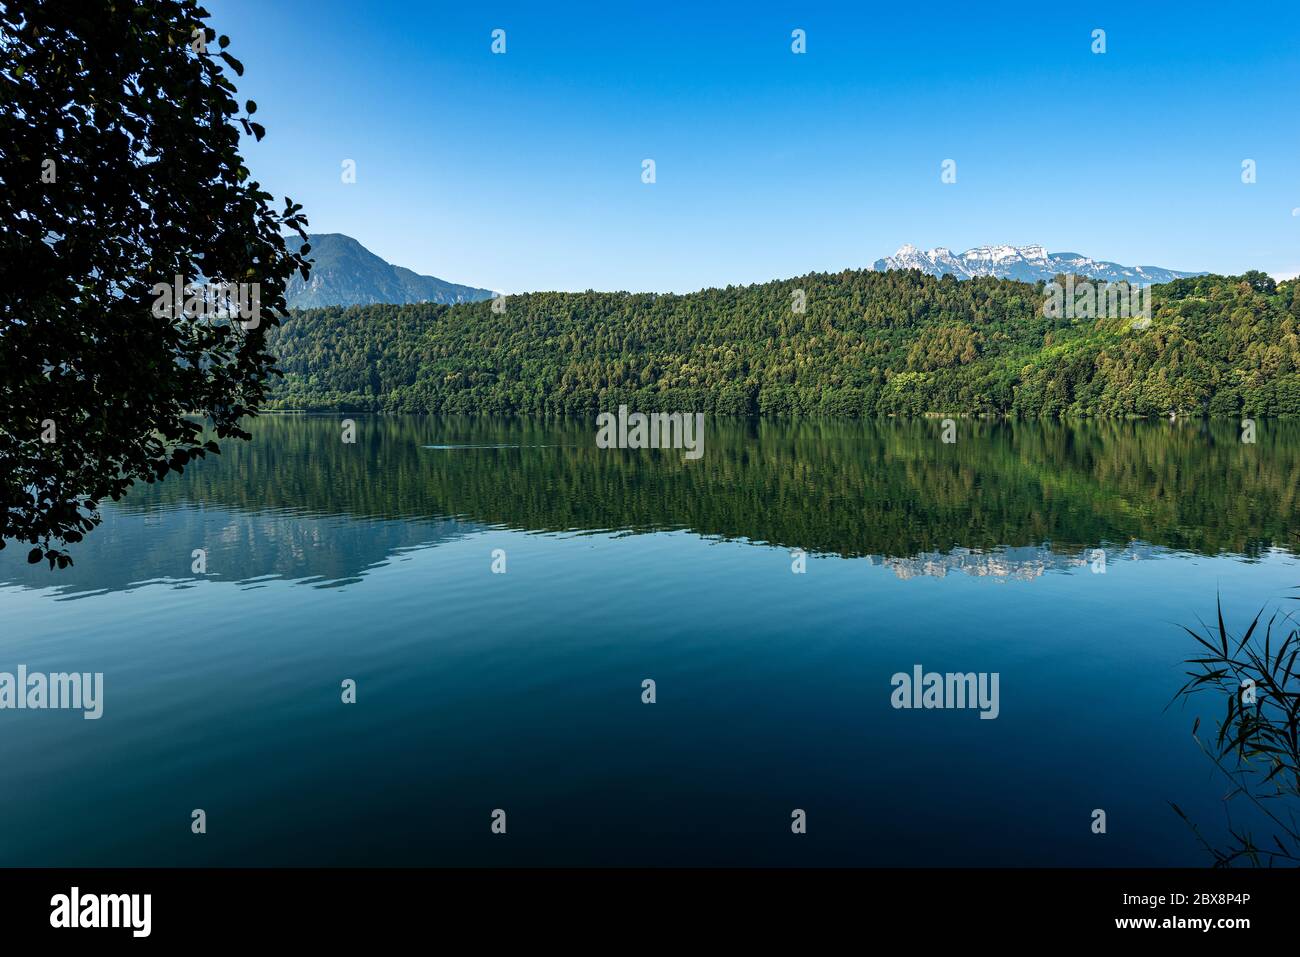 Lago di Levico, pequeño y hermoso lago en los Alpes italianos, ciudad de Levico Terme, provincia de Trento, Trentino Alto Adige, Italia, Europa Foto de stock